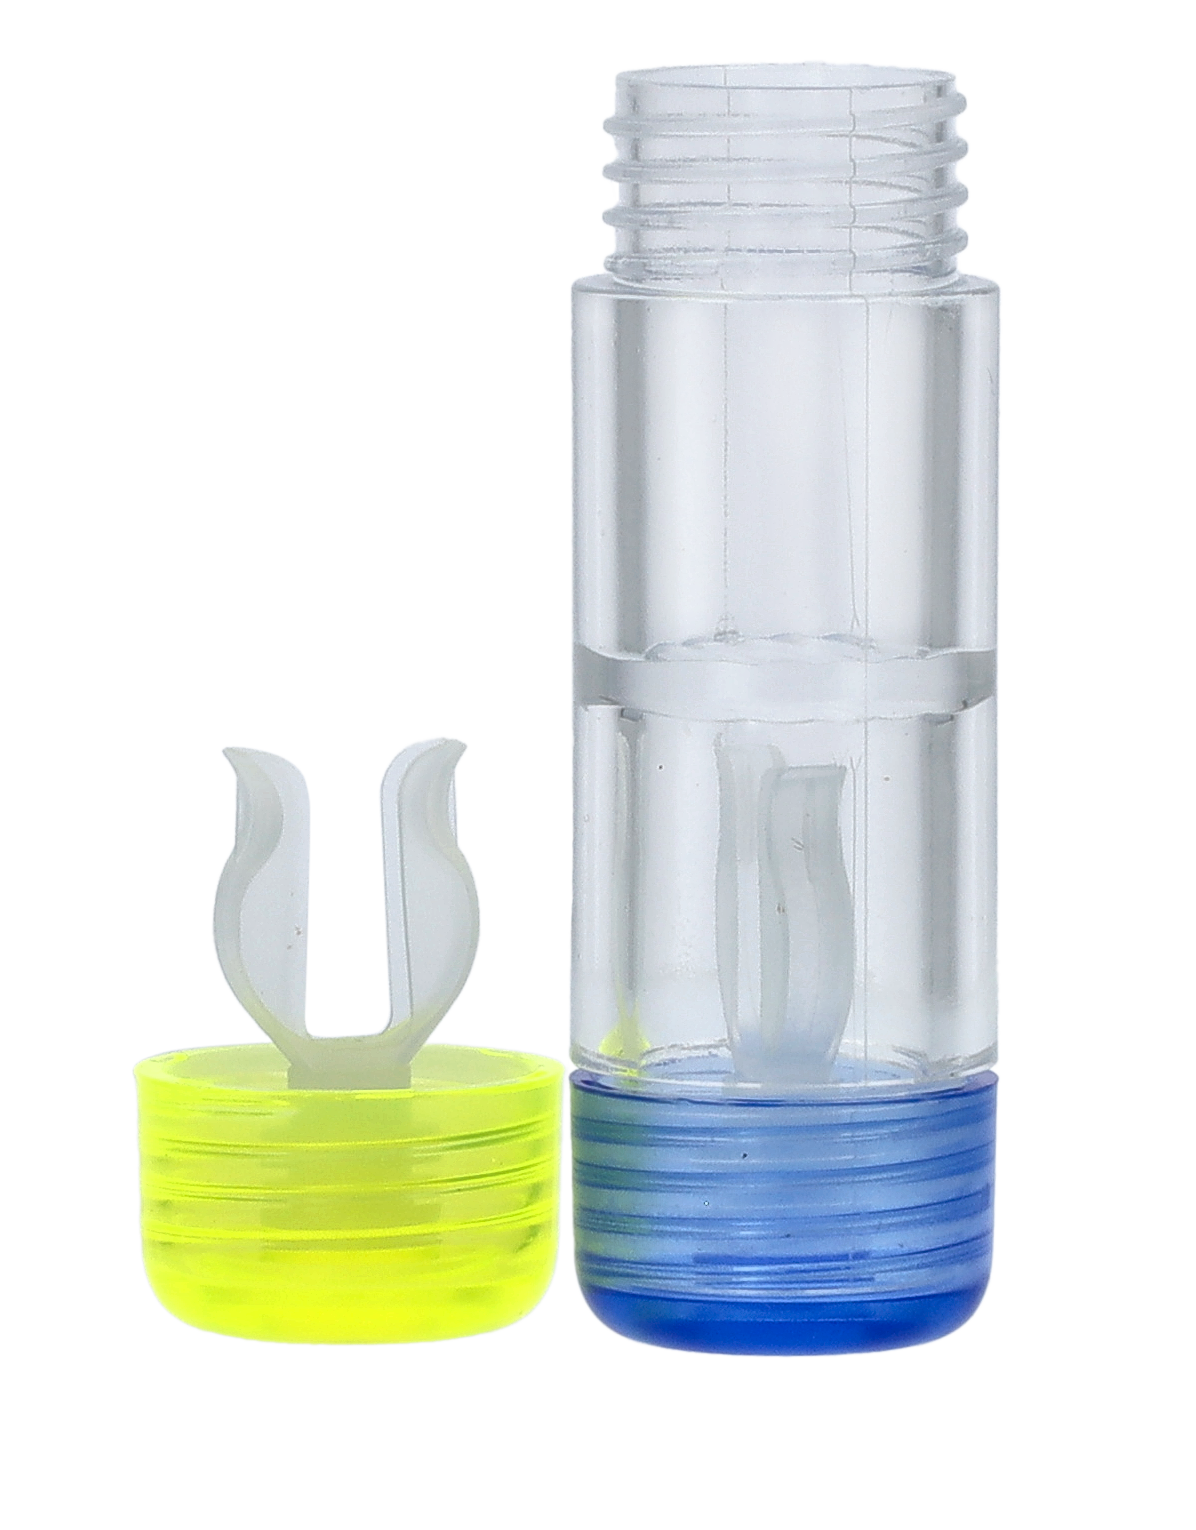 Kontaktlinsenbehälter für harte Linsen in blau/gelb